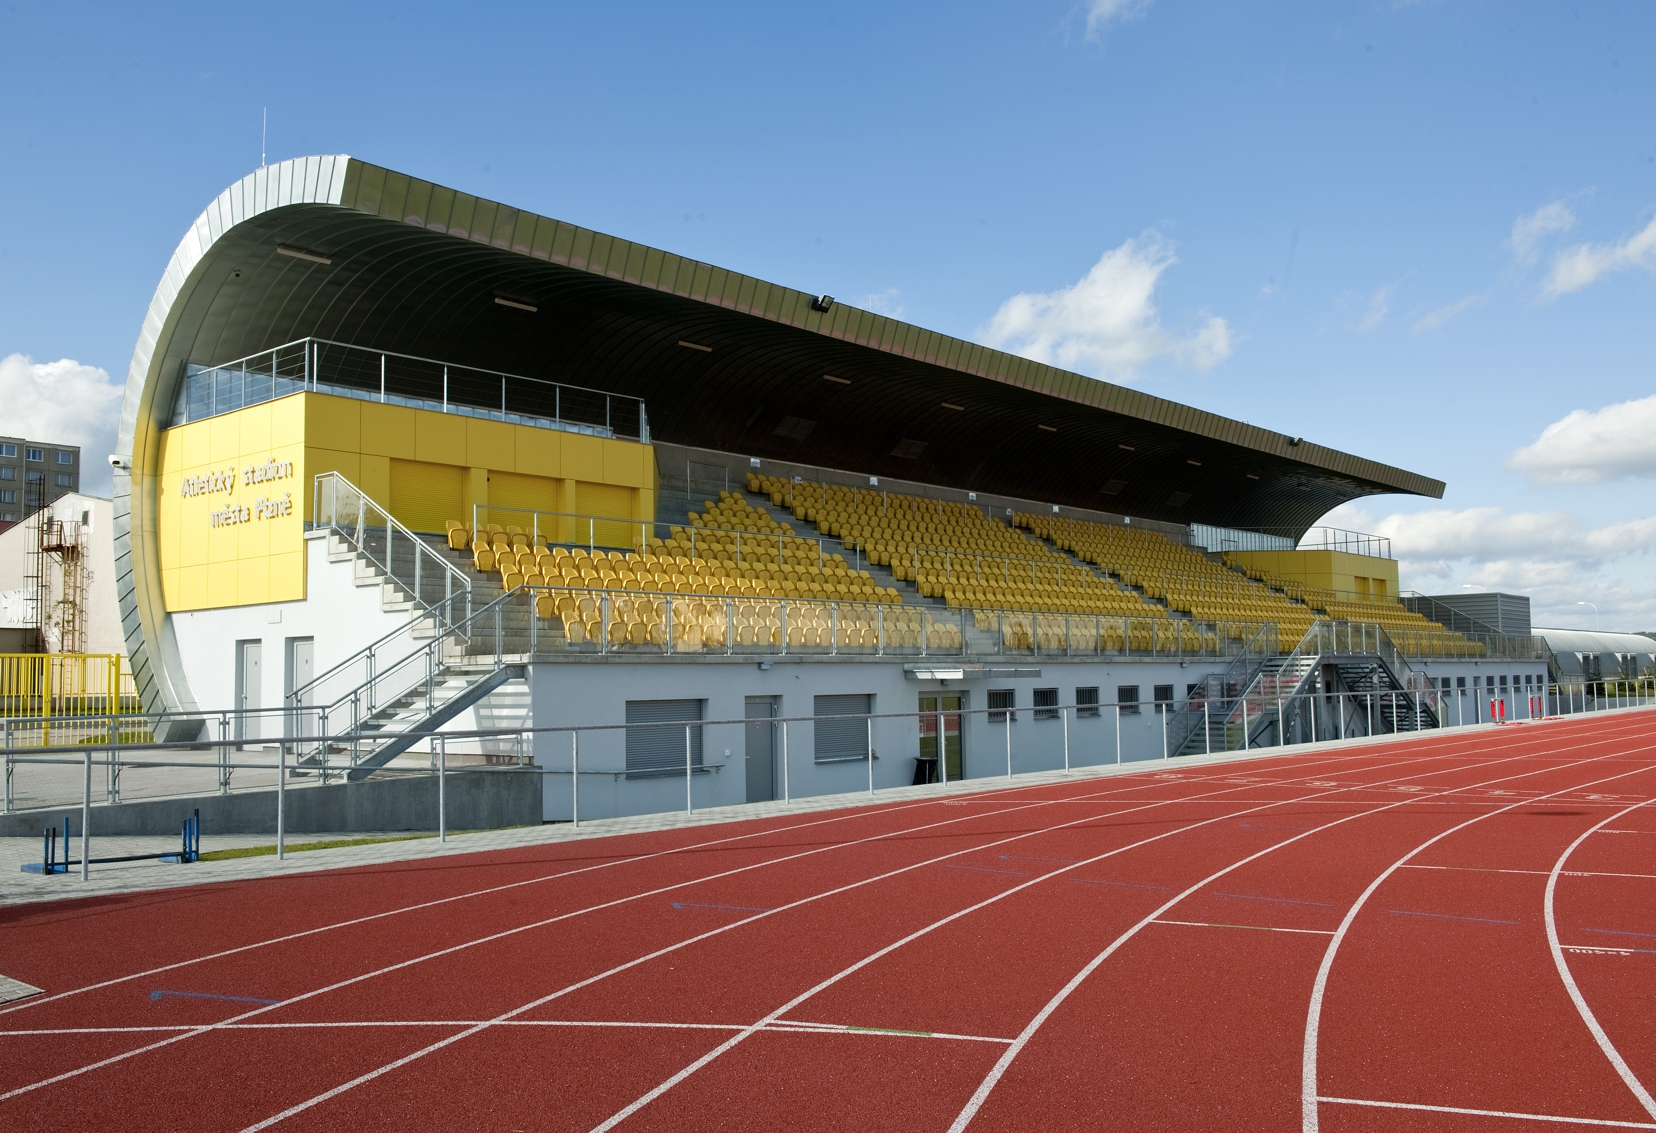 Atletický stadion Štruncovy sady - Bygningskonstruksjon